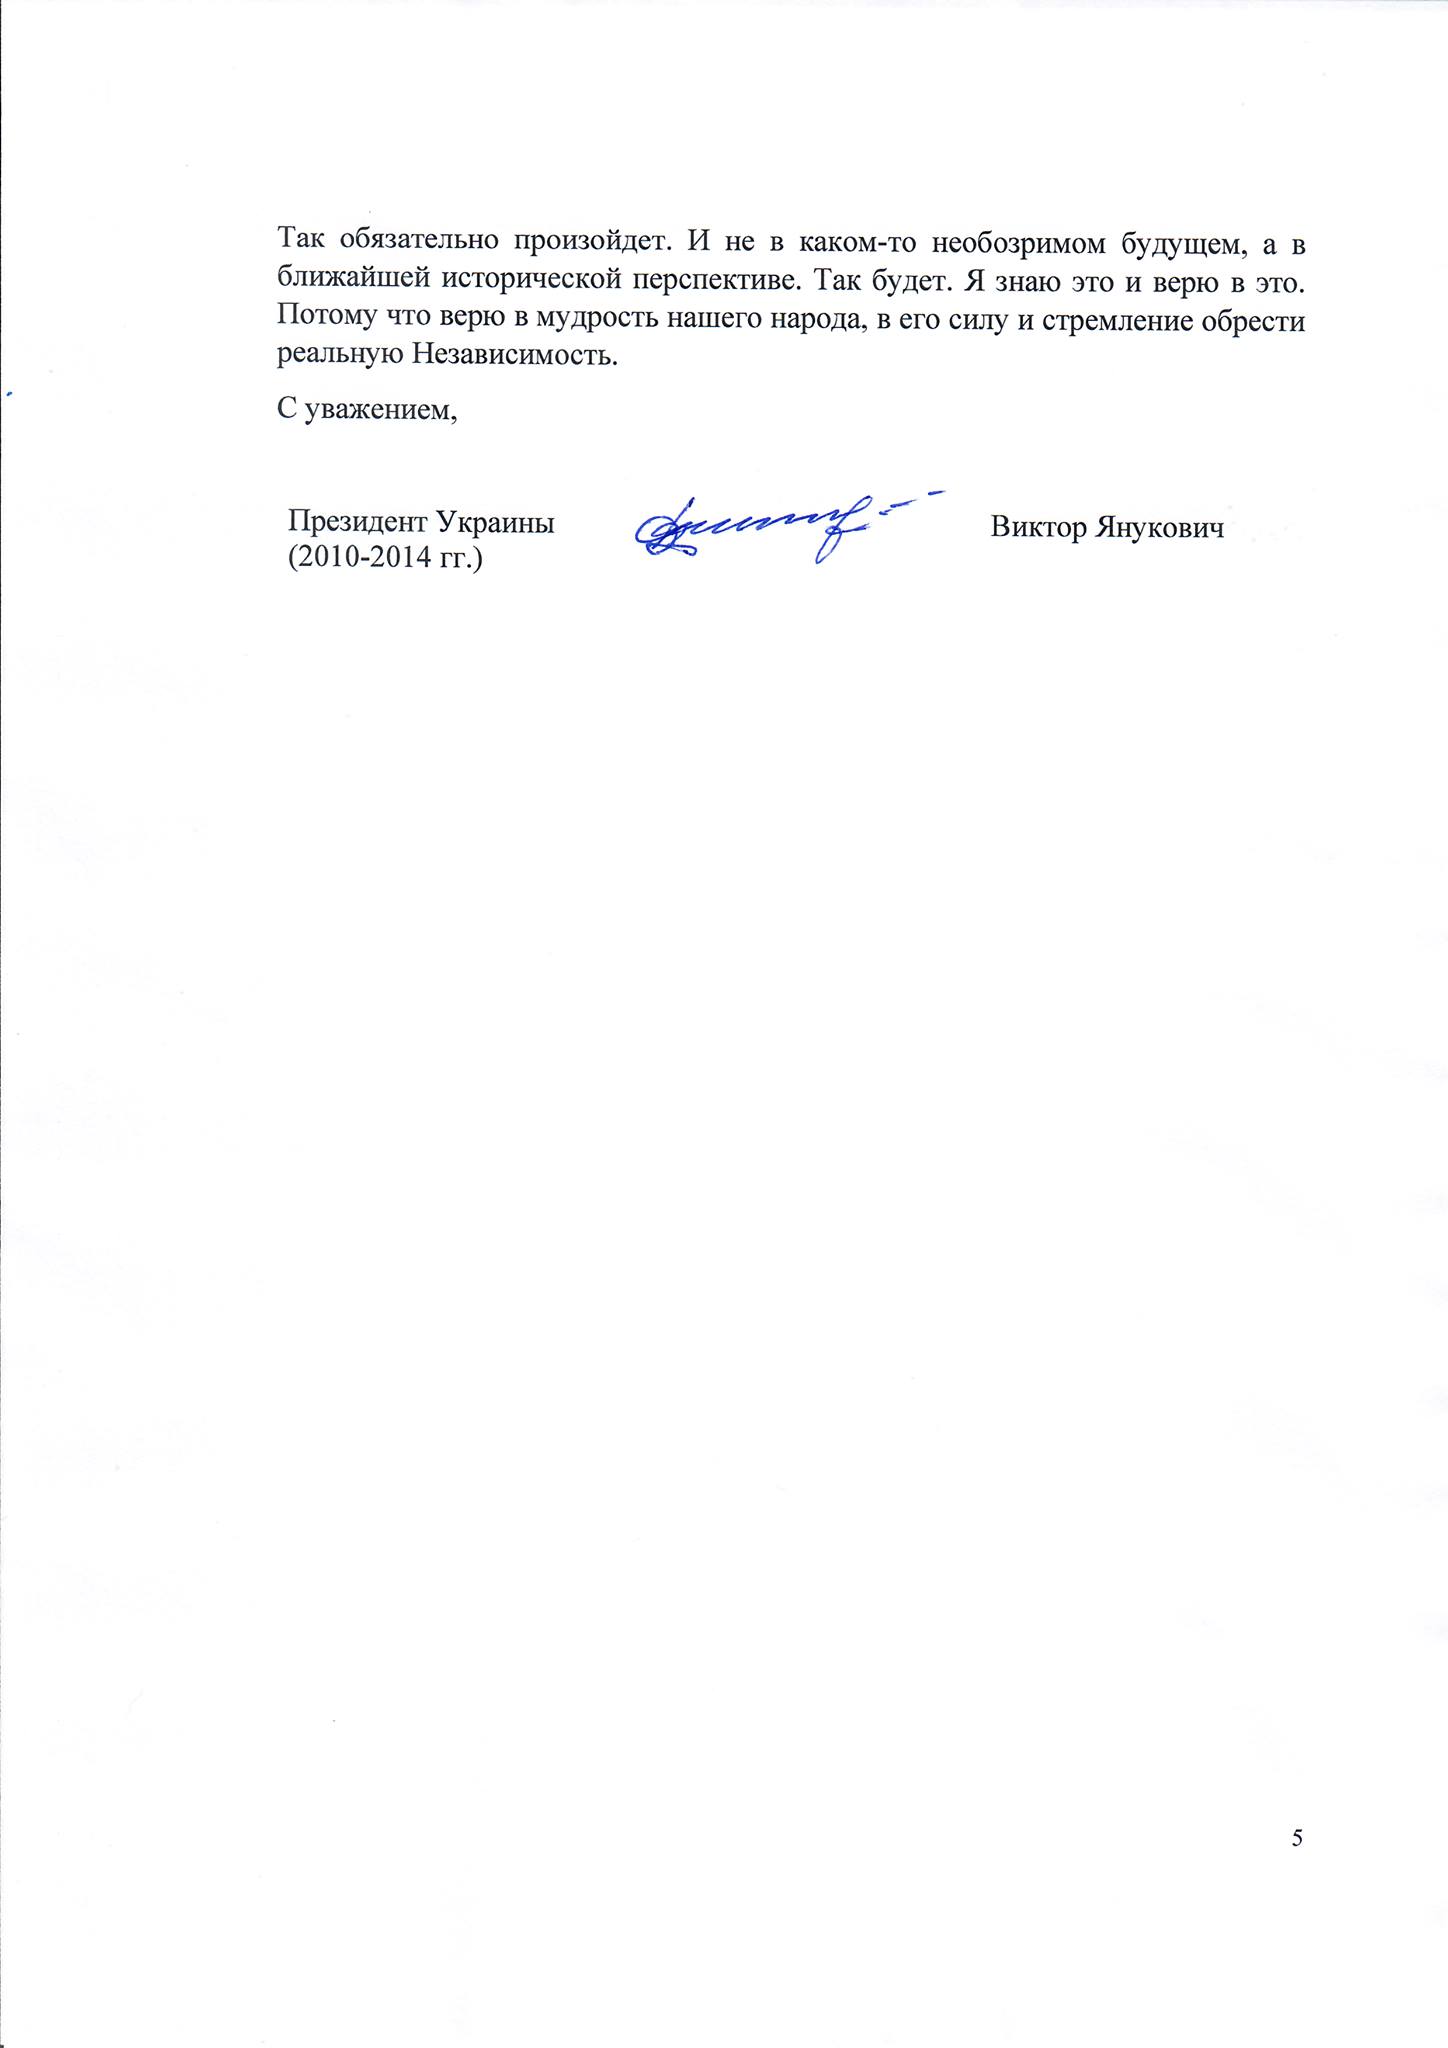 Виктор Янукович обратился к украинцам накануне Дня независимости. Скриншот сообщения в фейсбуке